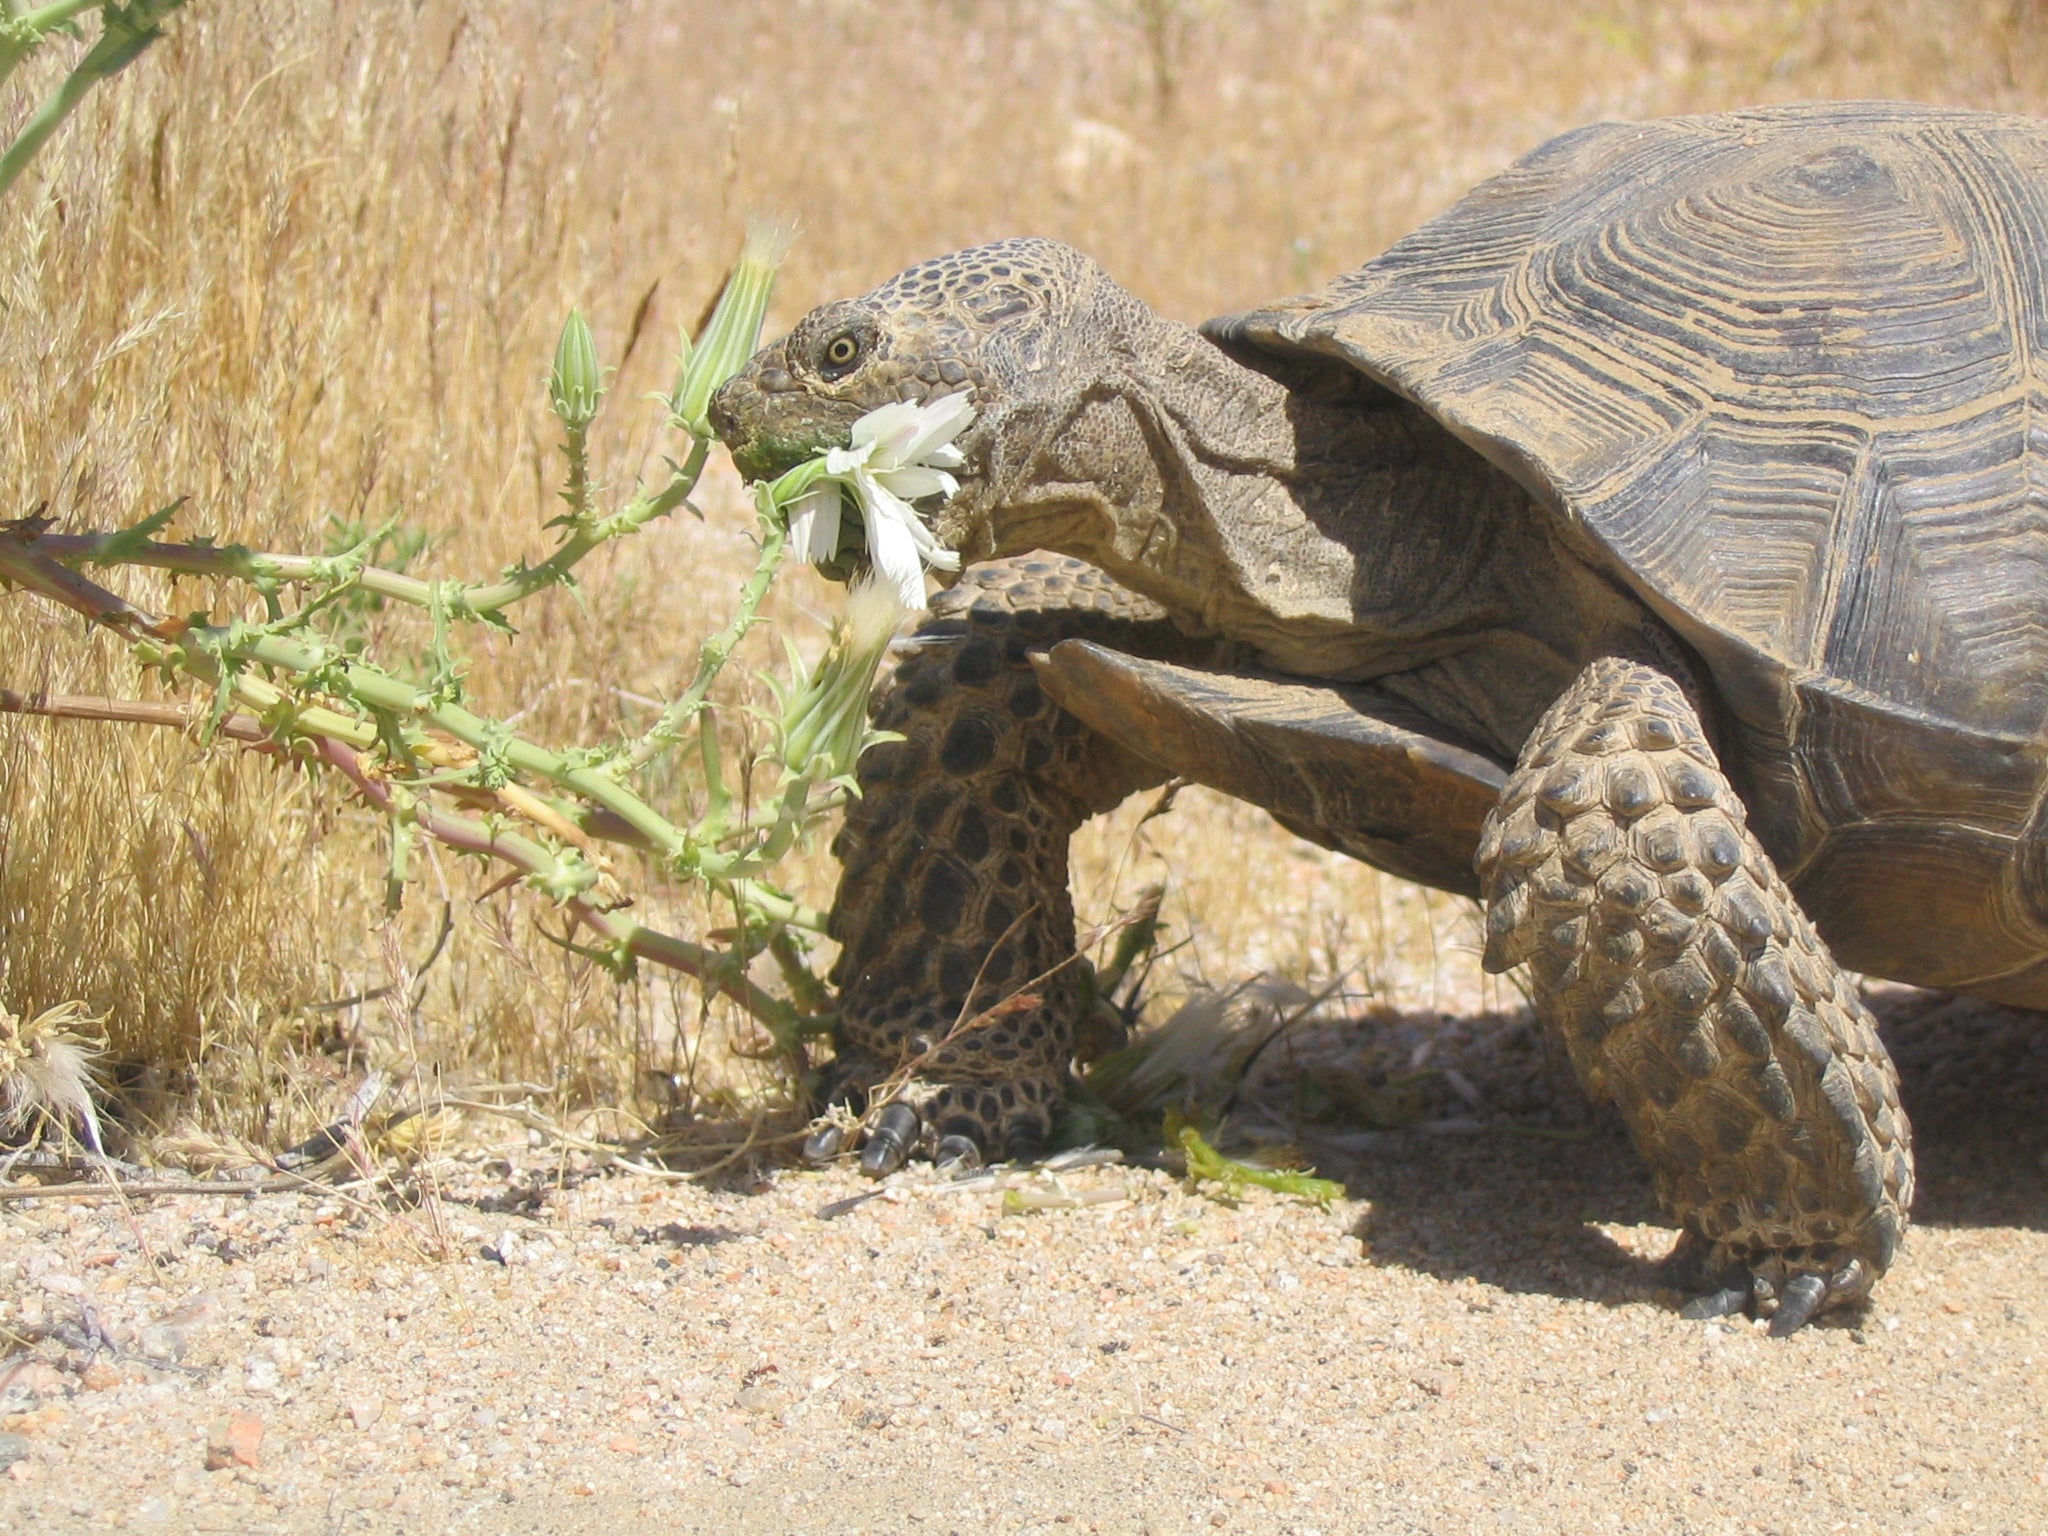 Desert tortoise eating